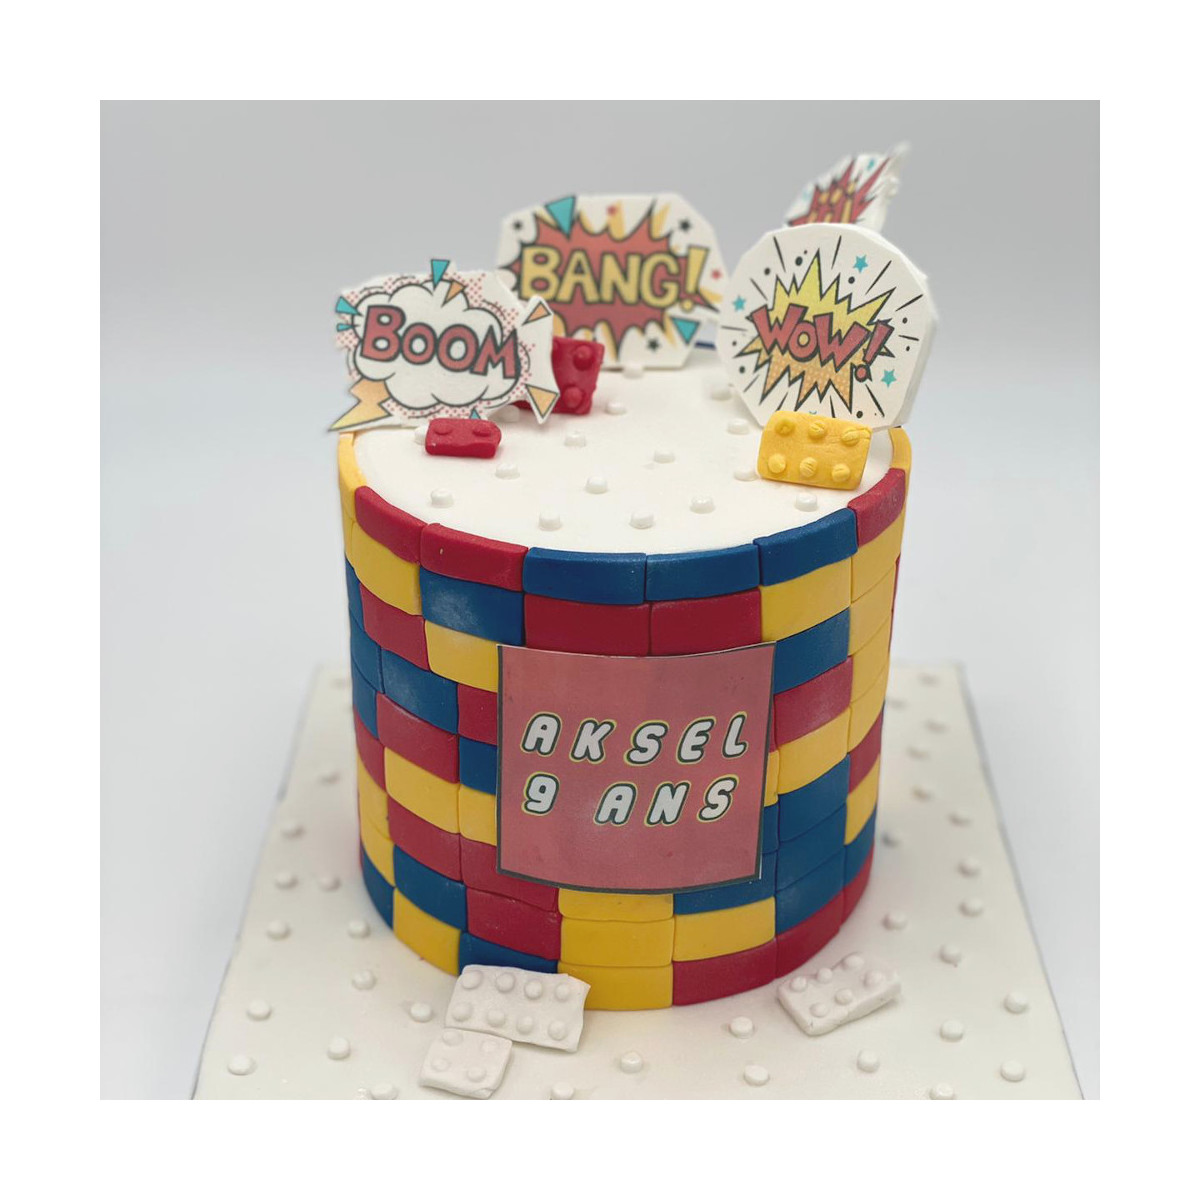 Le Gâteau Lego pour monter son anniversaire comme un champion